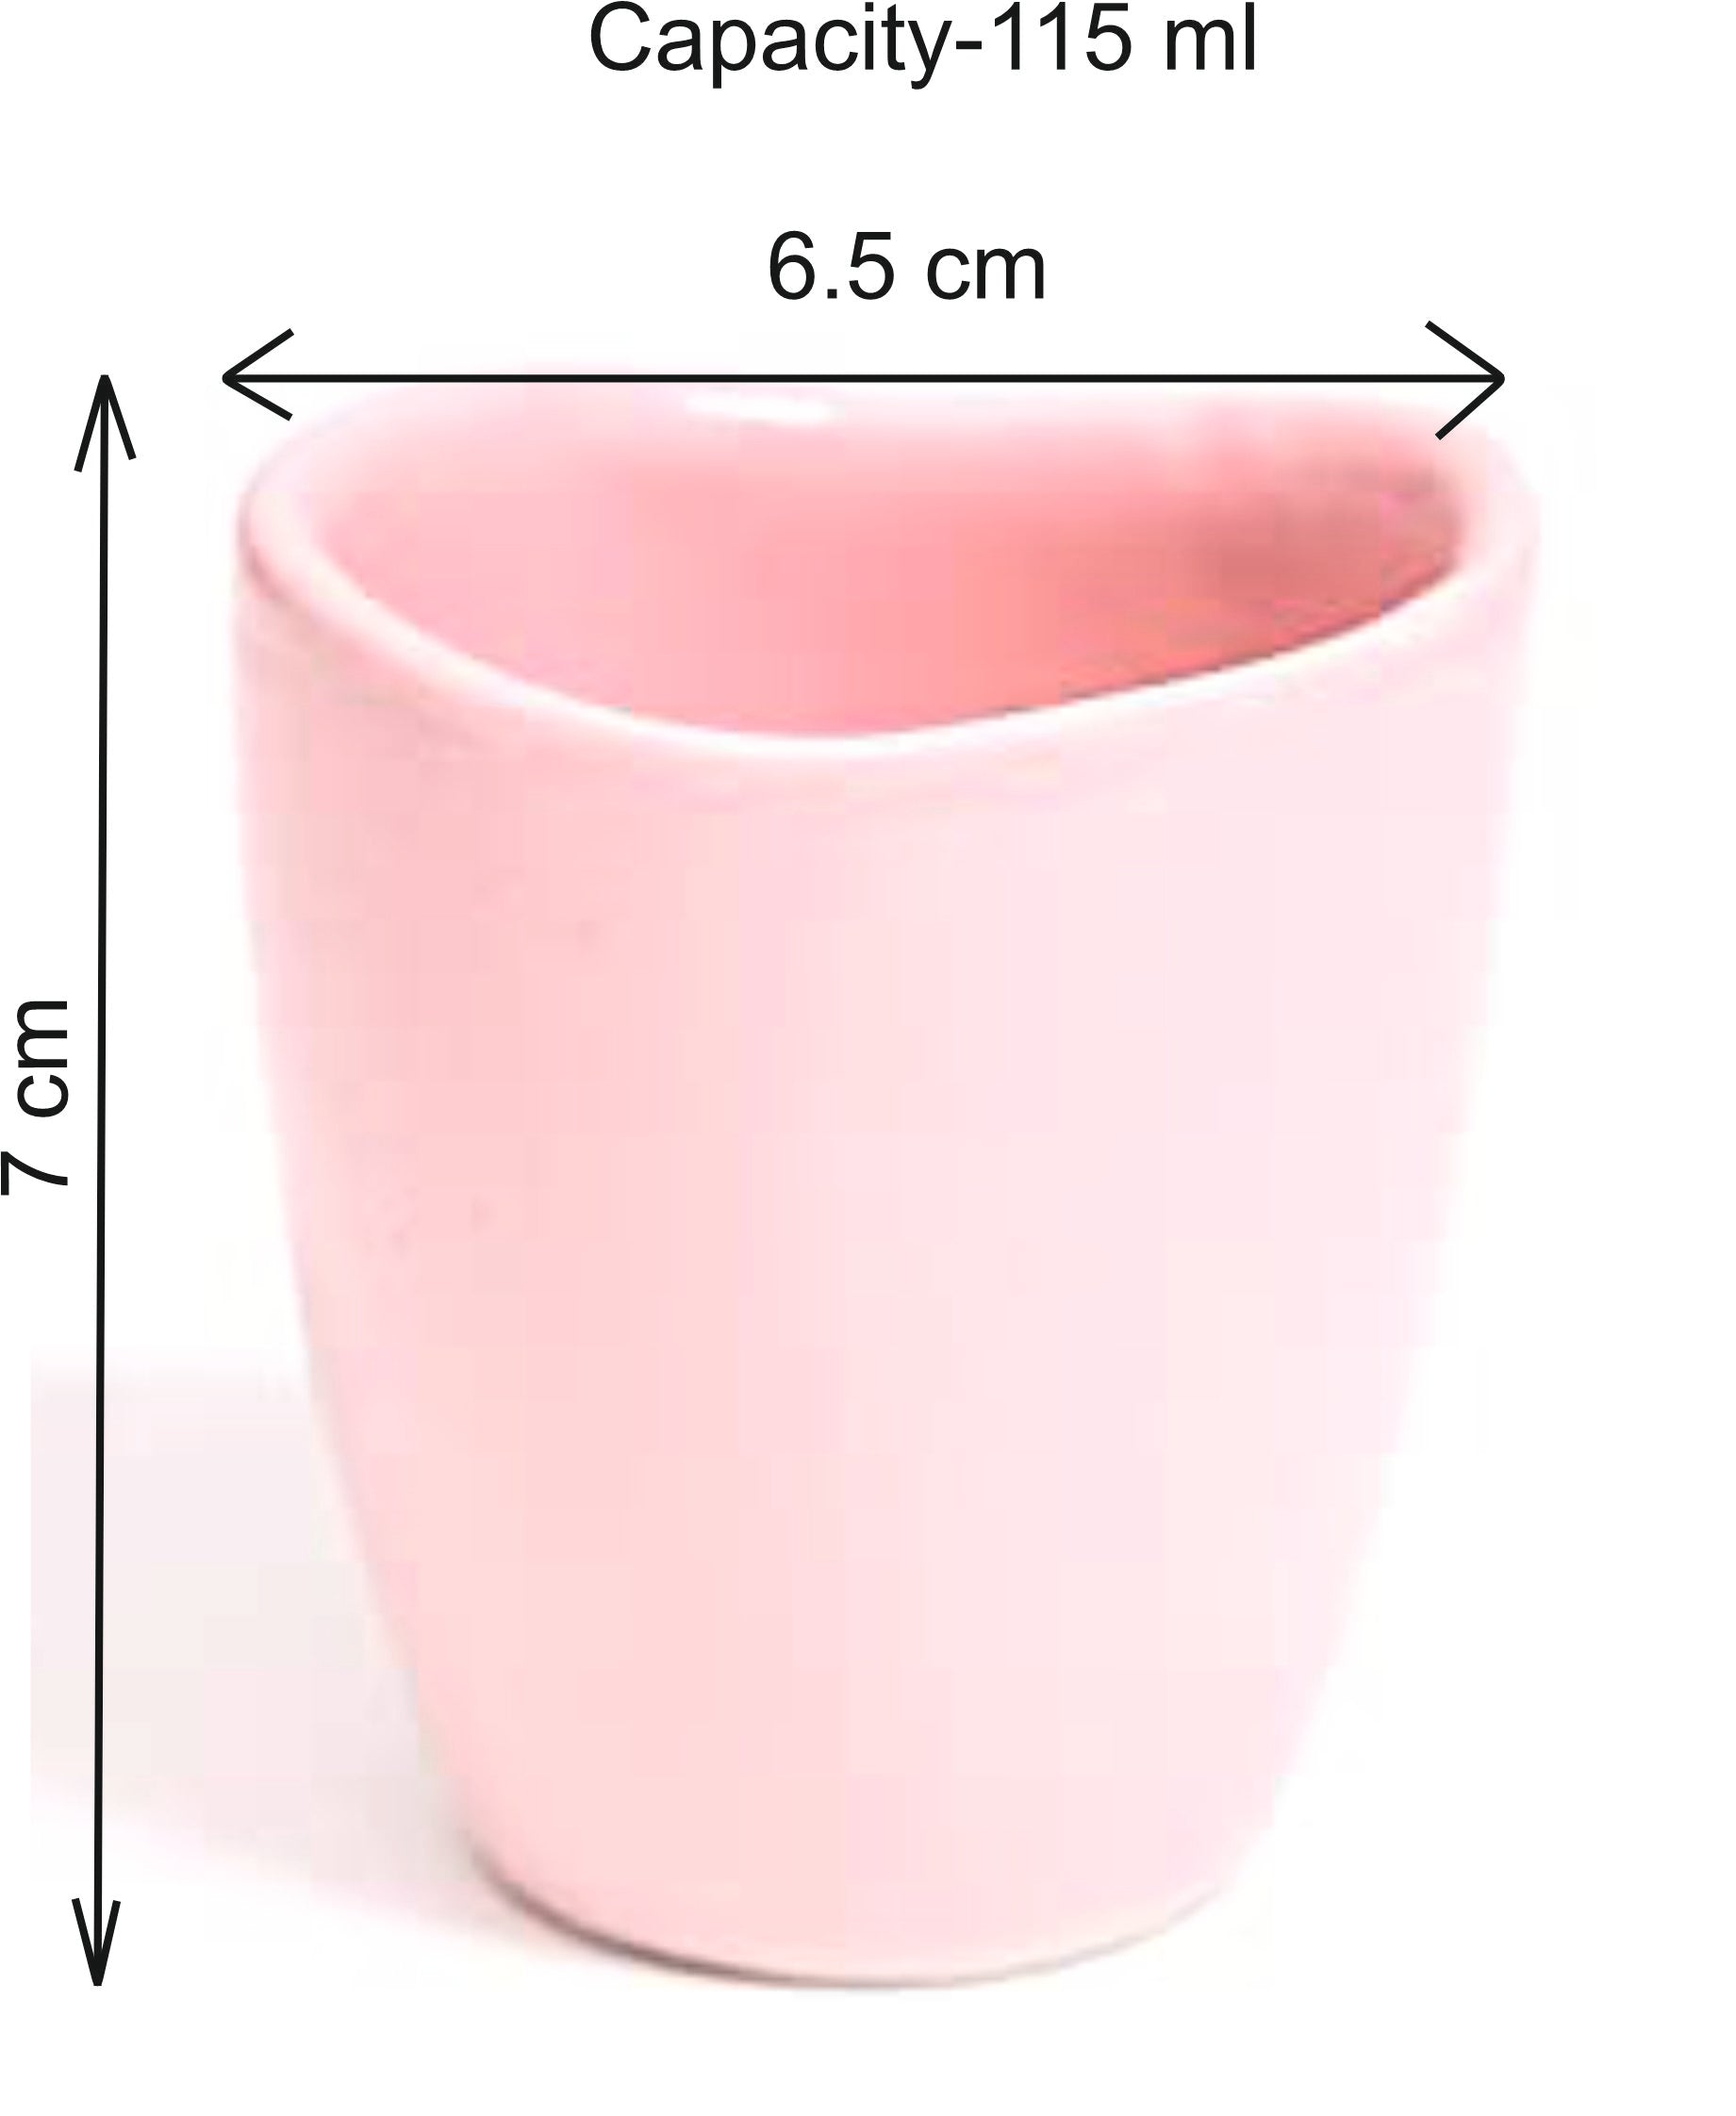 Espresso Handmade Mugs Organic Ceramic – 2 Nos